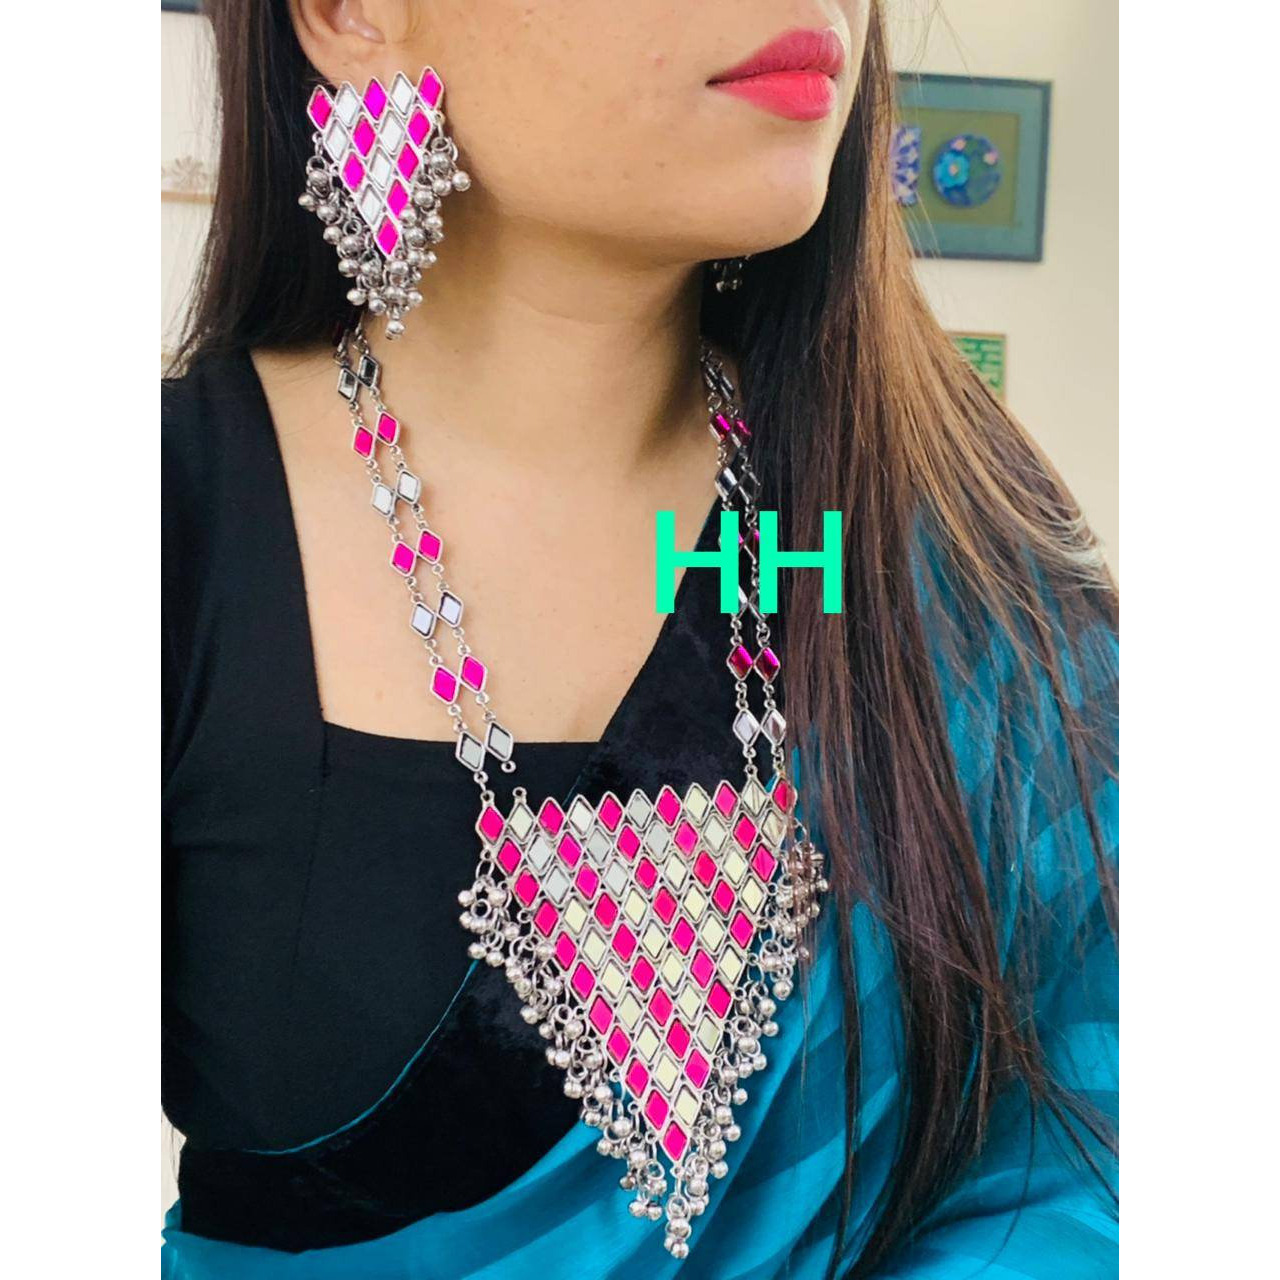 Afghani Mirror Jewelry Set, Indian Jewelry, Mirror Necklace Set,Boho Hippie Jewelry, Tribal Mirror Necklace, Gypsy Jewelry, Handmade Jewelry